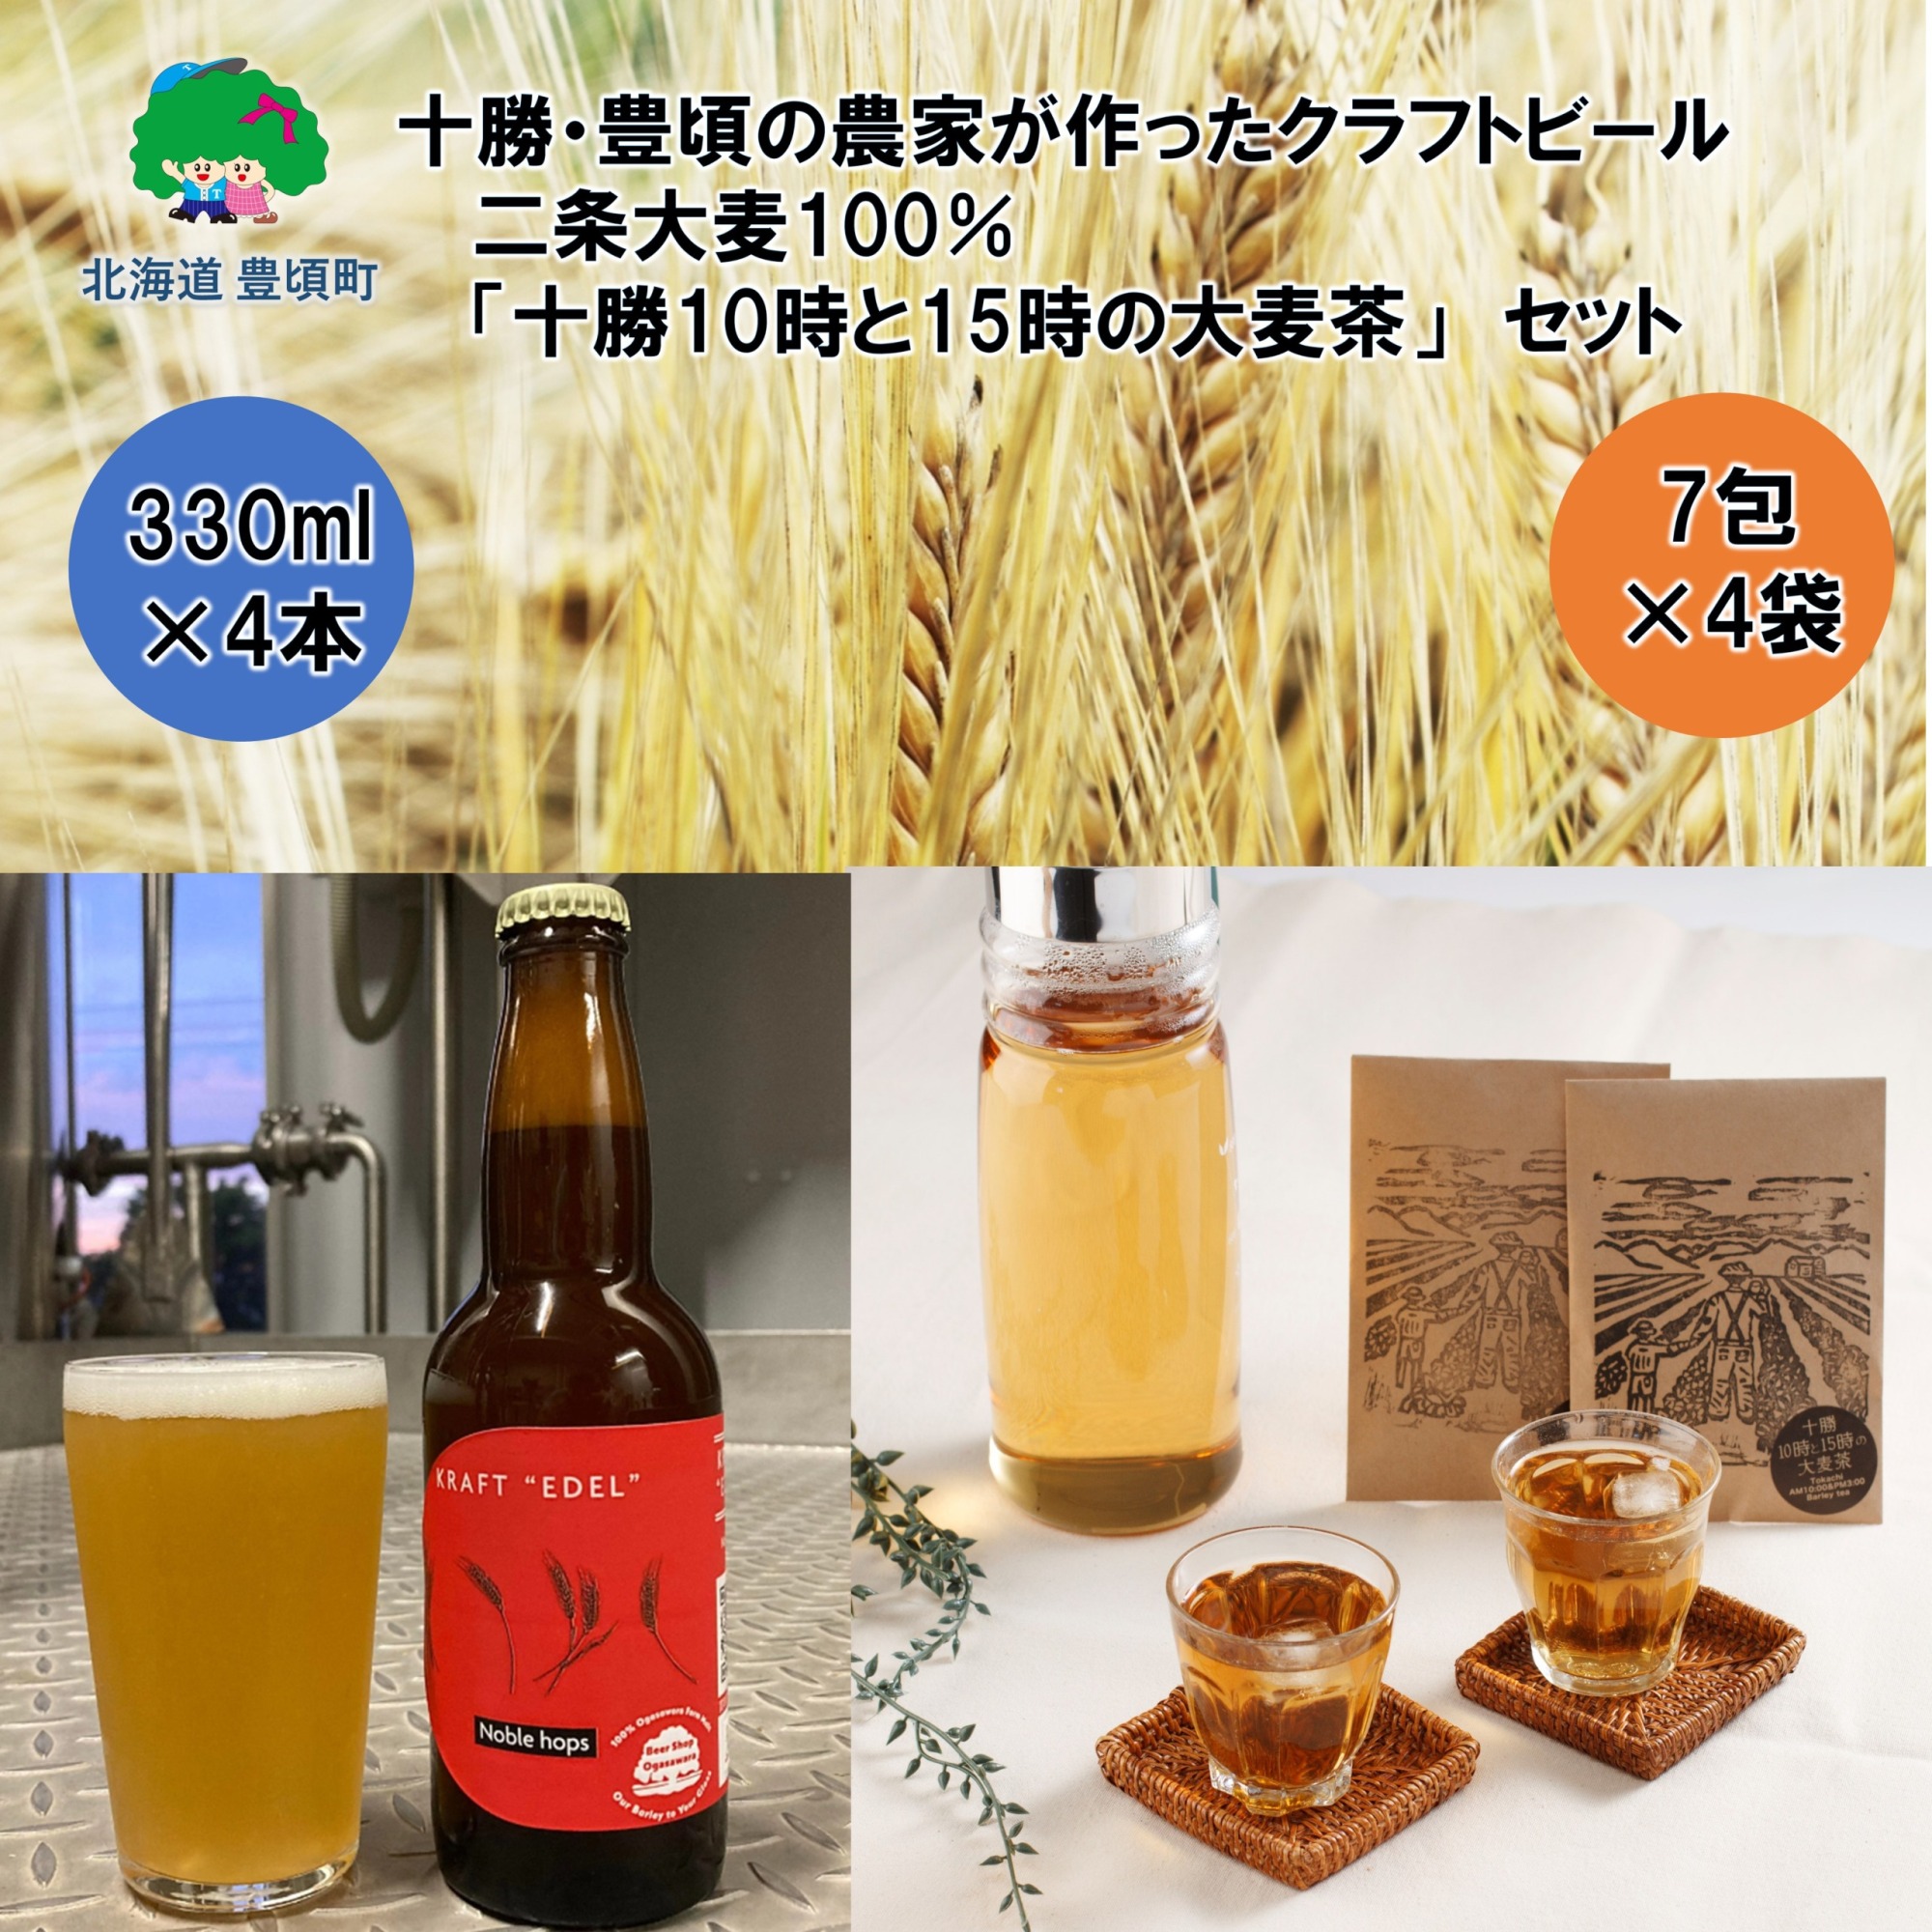 十勝・豊頃の農家が作ったクラフトビール330ml×4本・二条大麦100％「十勝10時と15時の大麦茶」7包×4袋セット